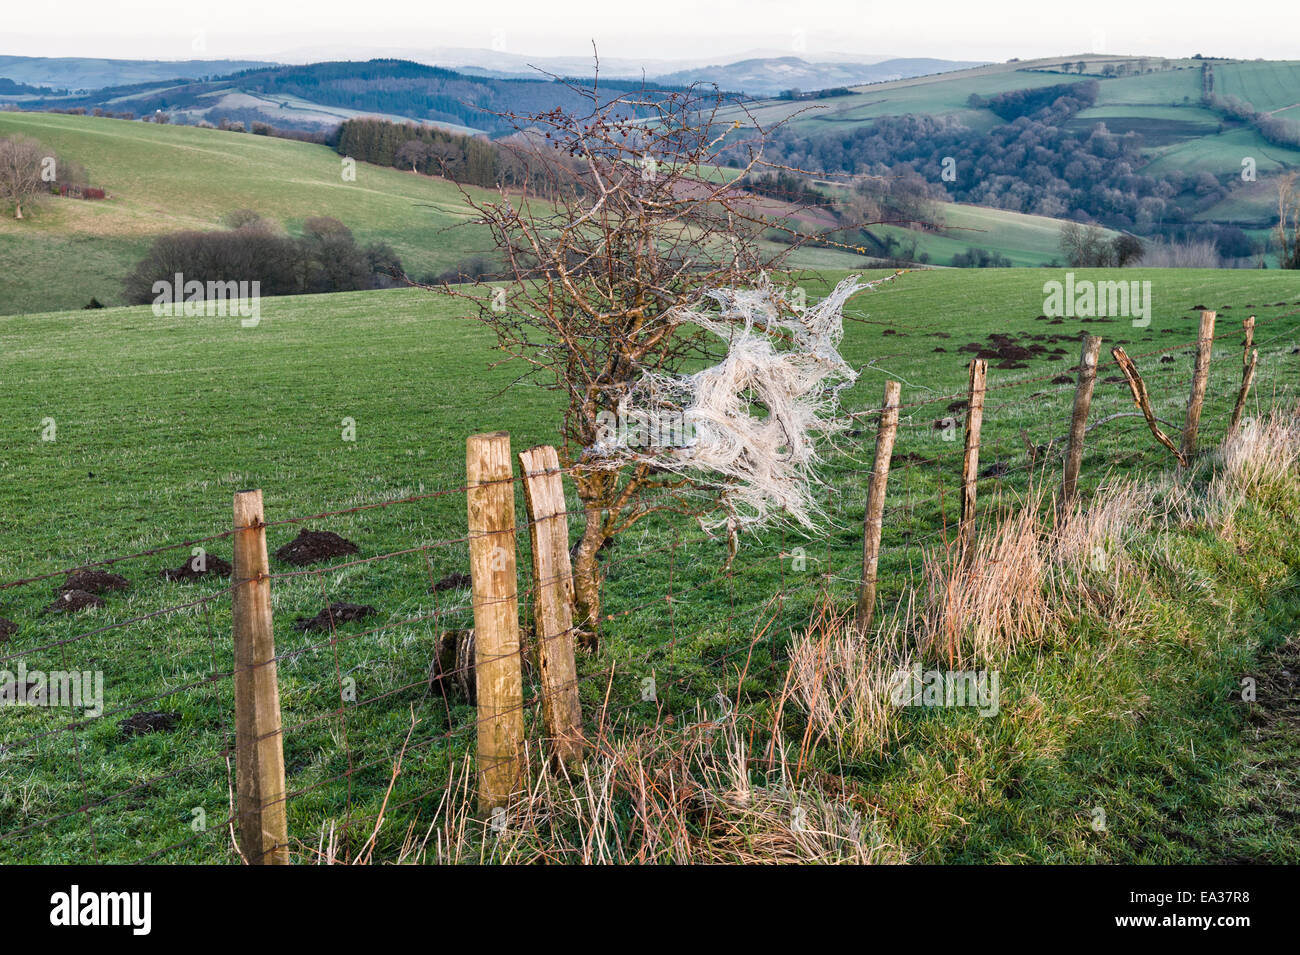 Rifiuti agricoli - twisted nylon netting catturati in una siepe, Wales, Regno Unito. Un pericolo per la fauna e per il bestiame d' allevamento Foto Stock